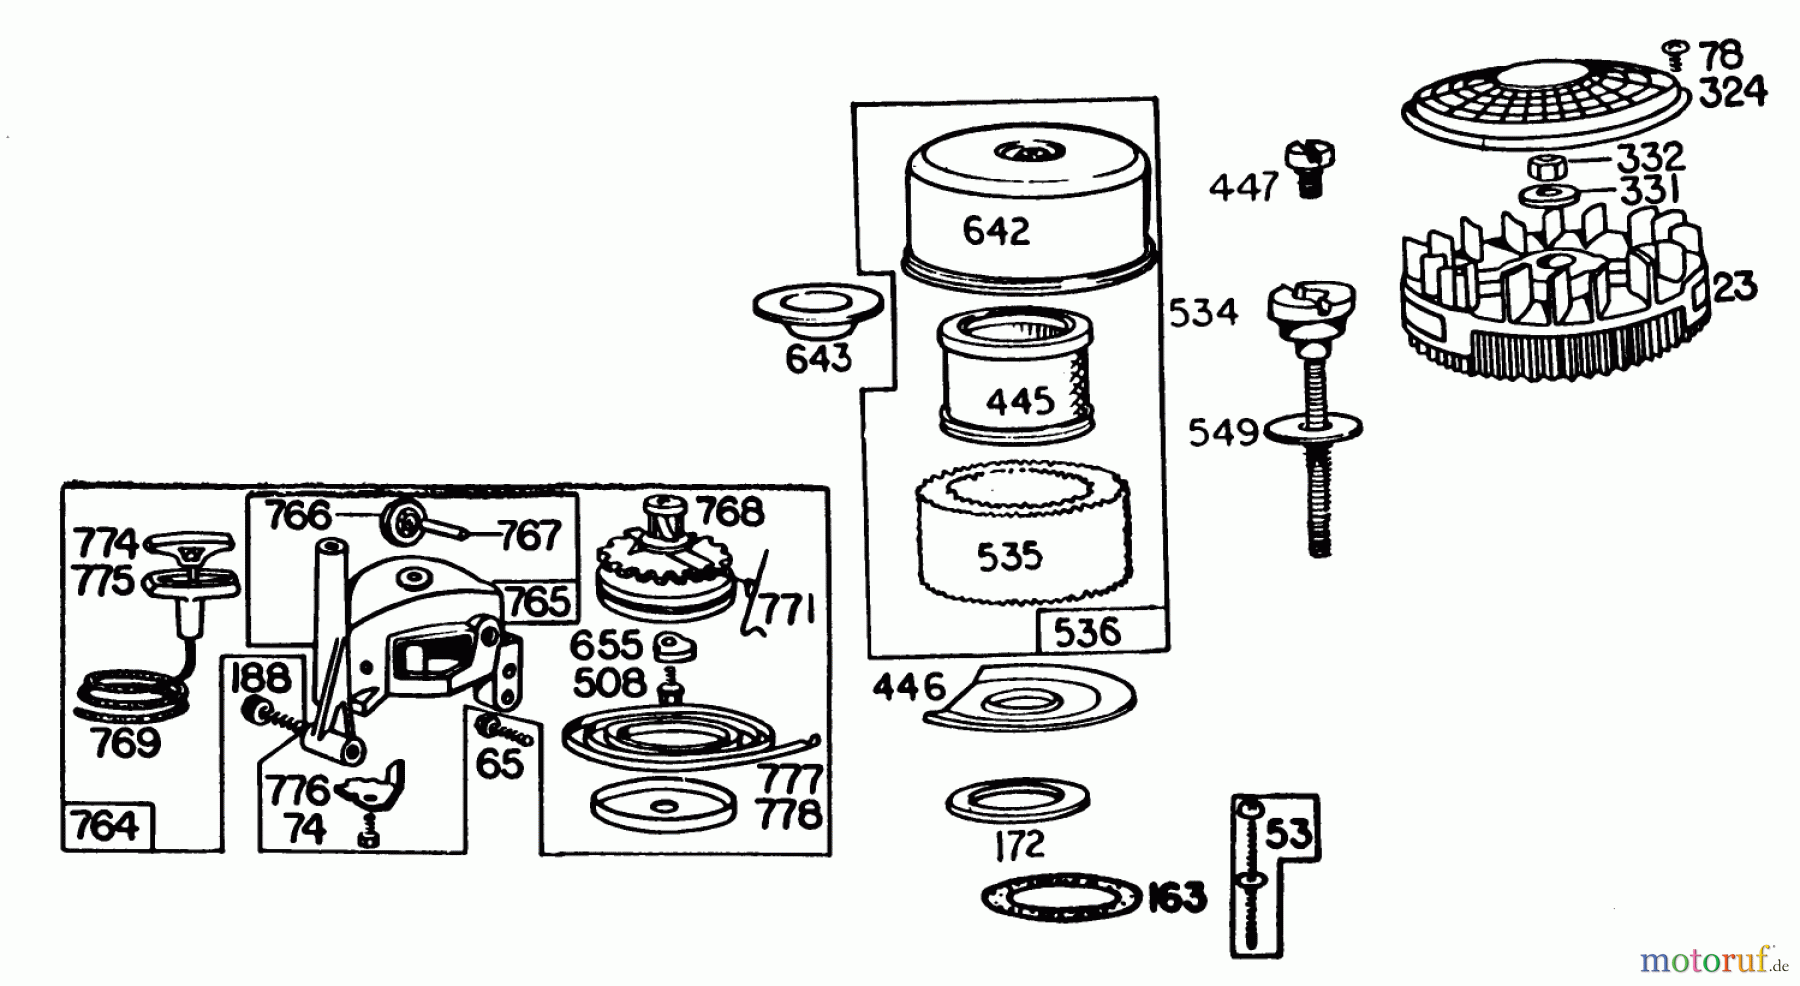  Toro Neu Mowers, Walk-Behind Seite 1 20661 - Toro Lawnmower, 1983 (3000001-3999999) ENGINE BRIGGS & STRATTON MODEL NO. 110908-1204-01 #2